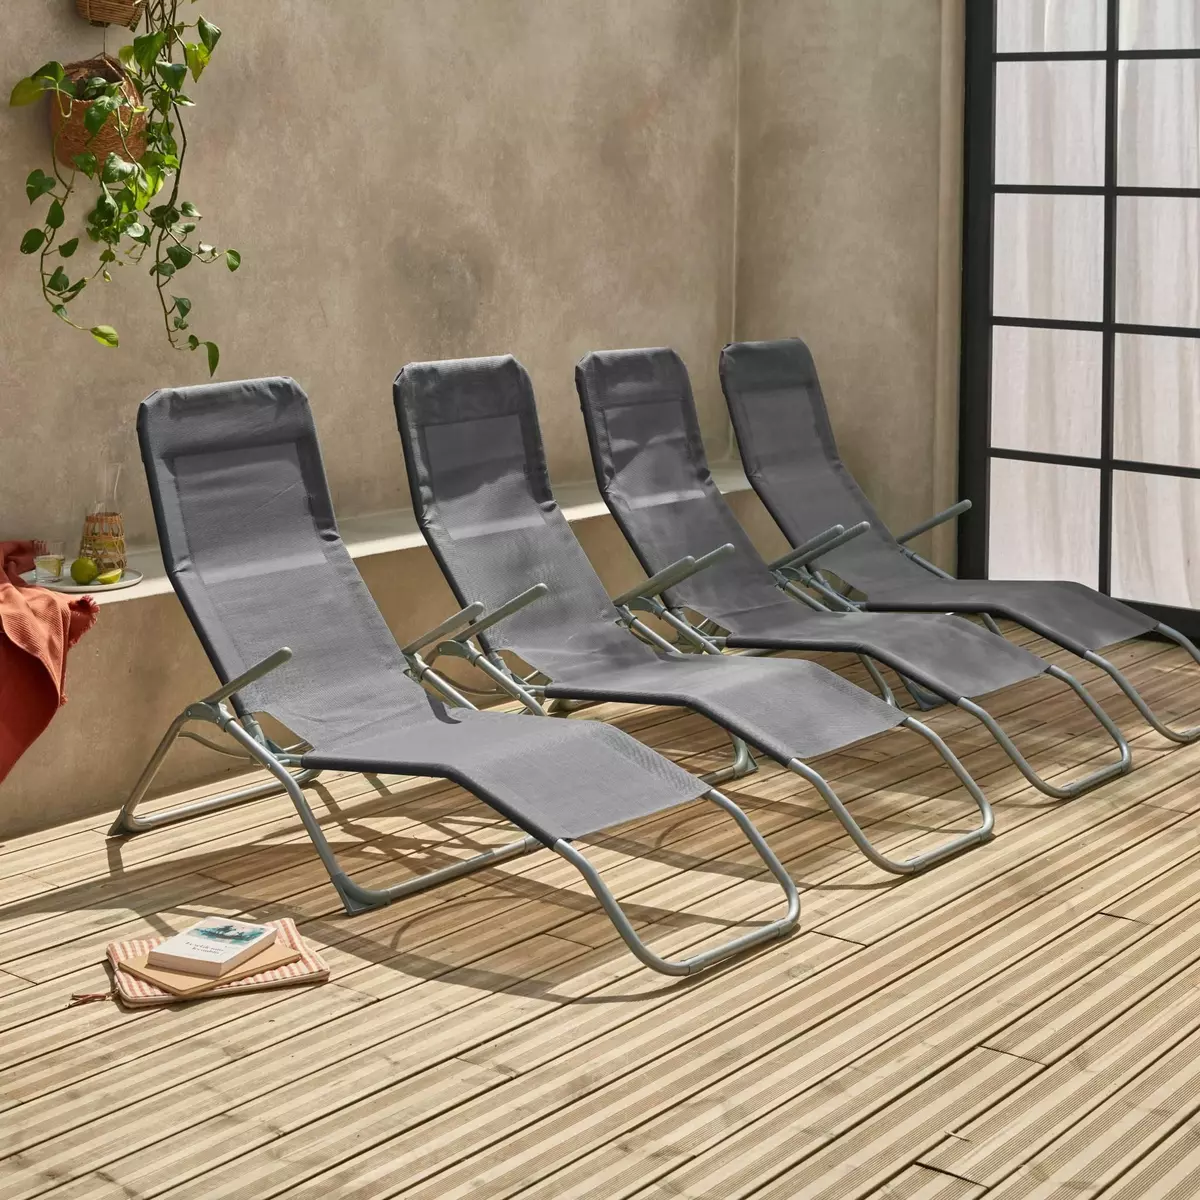  Lot de 4 bains de soleil pliants - Levito - Transats textilène 2 positions, chaises longues